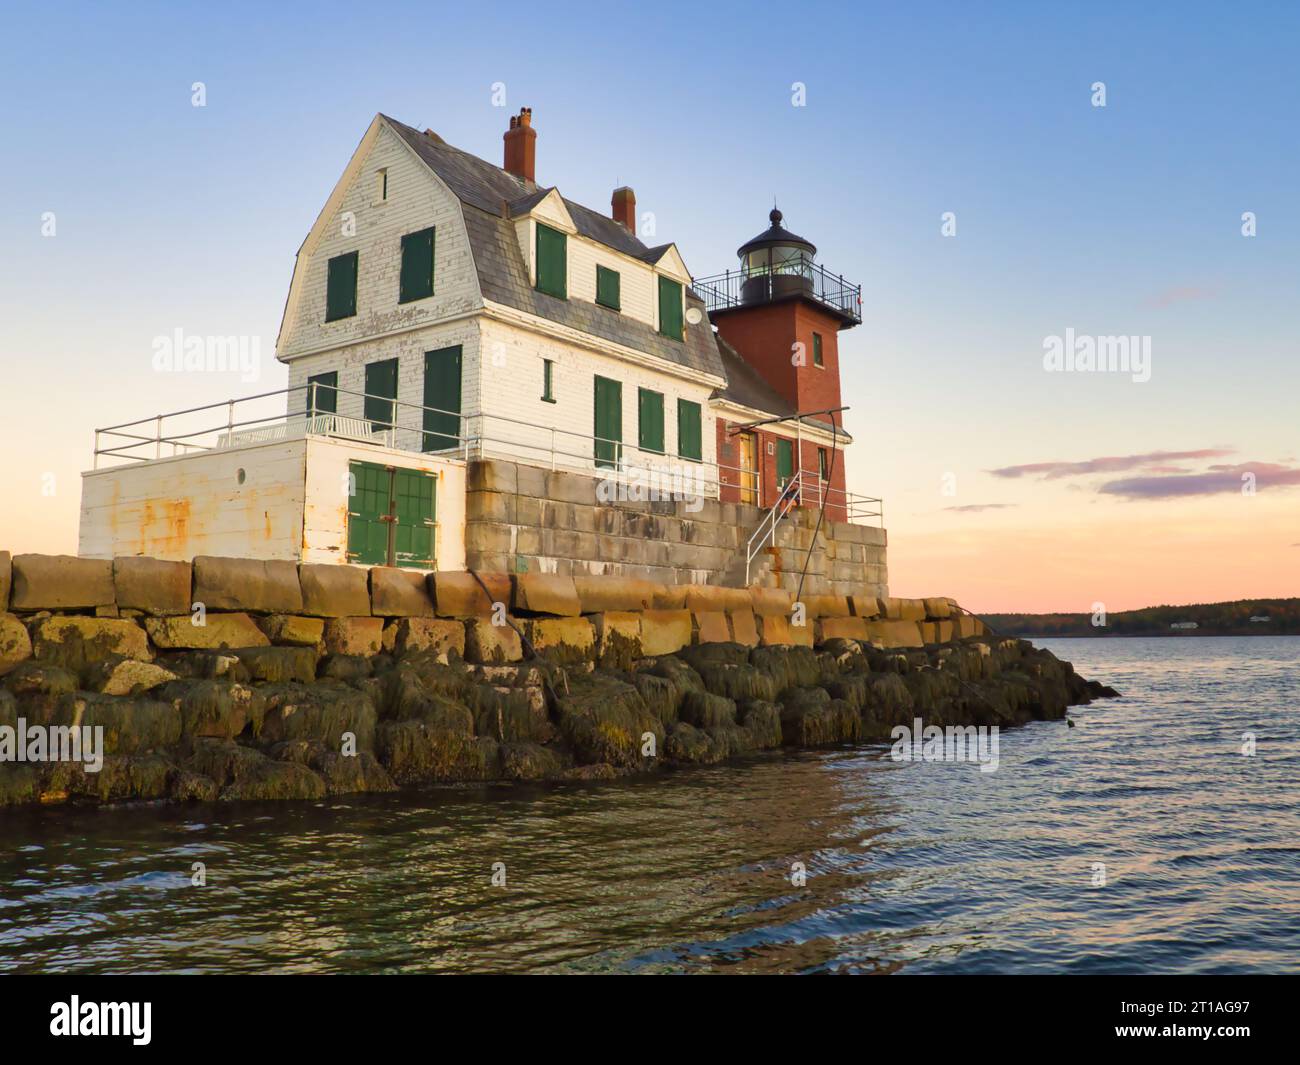 Coucher de soleil à l'automne au Rockland Breakwater Lighthouse dans le Maine vu de l'eau. Bâtiment historique avec architecture en bois, pierre et brique. Banque D'Images